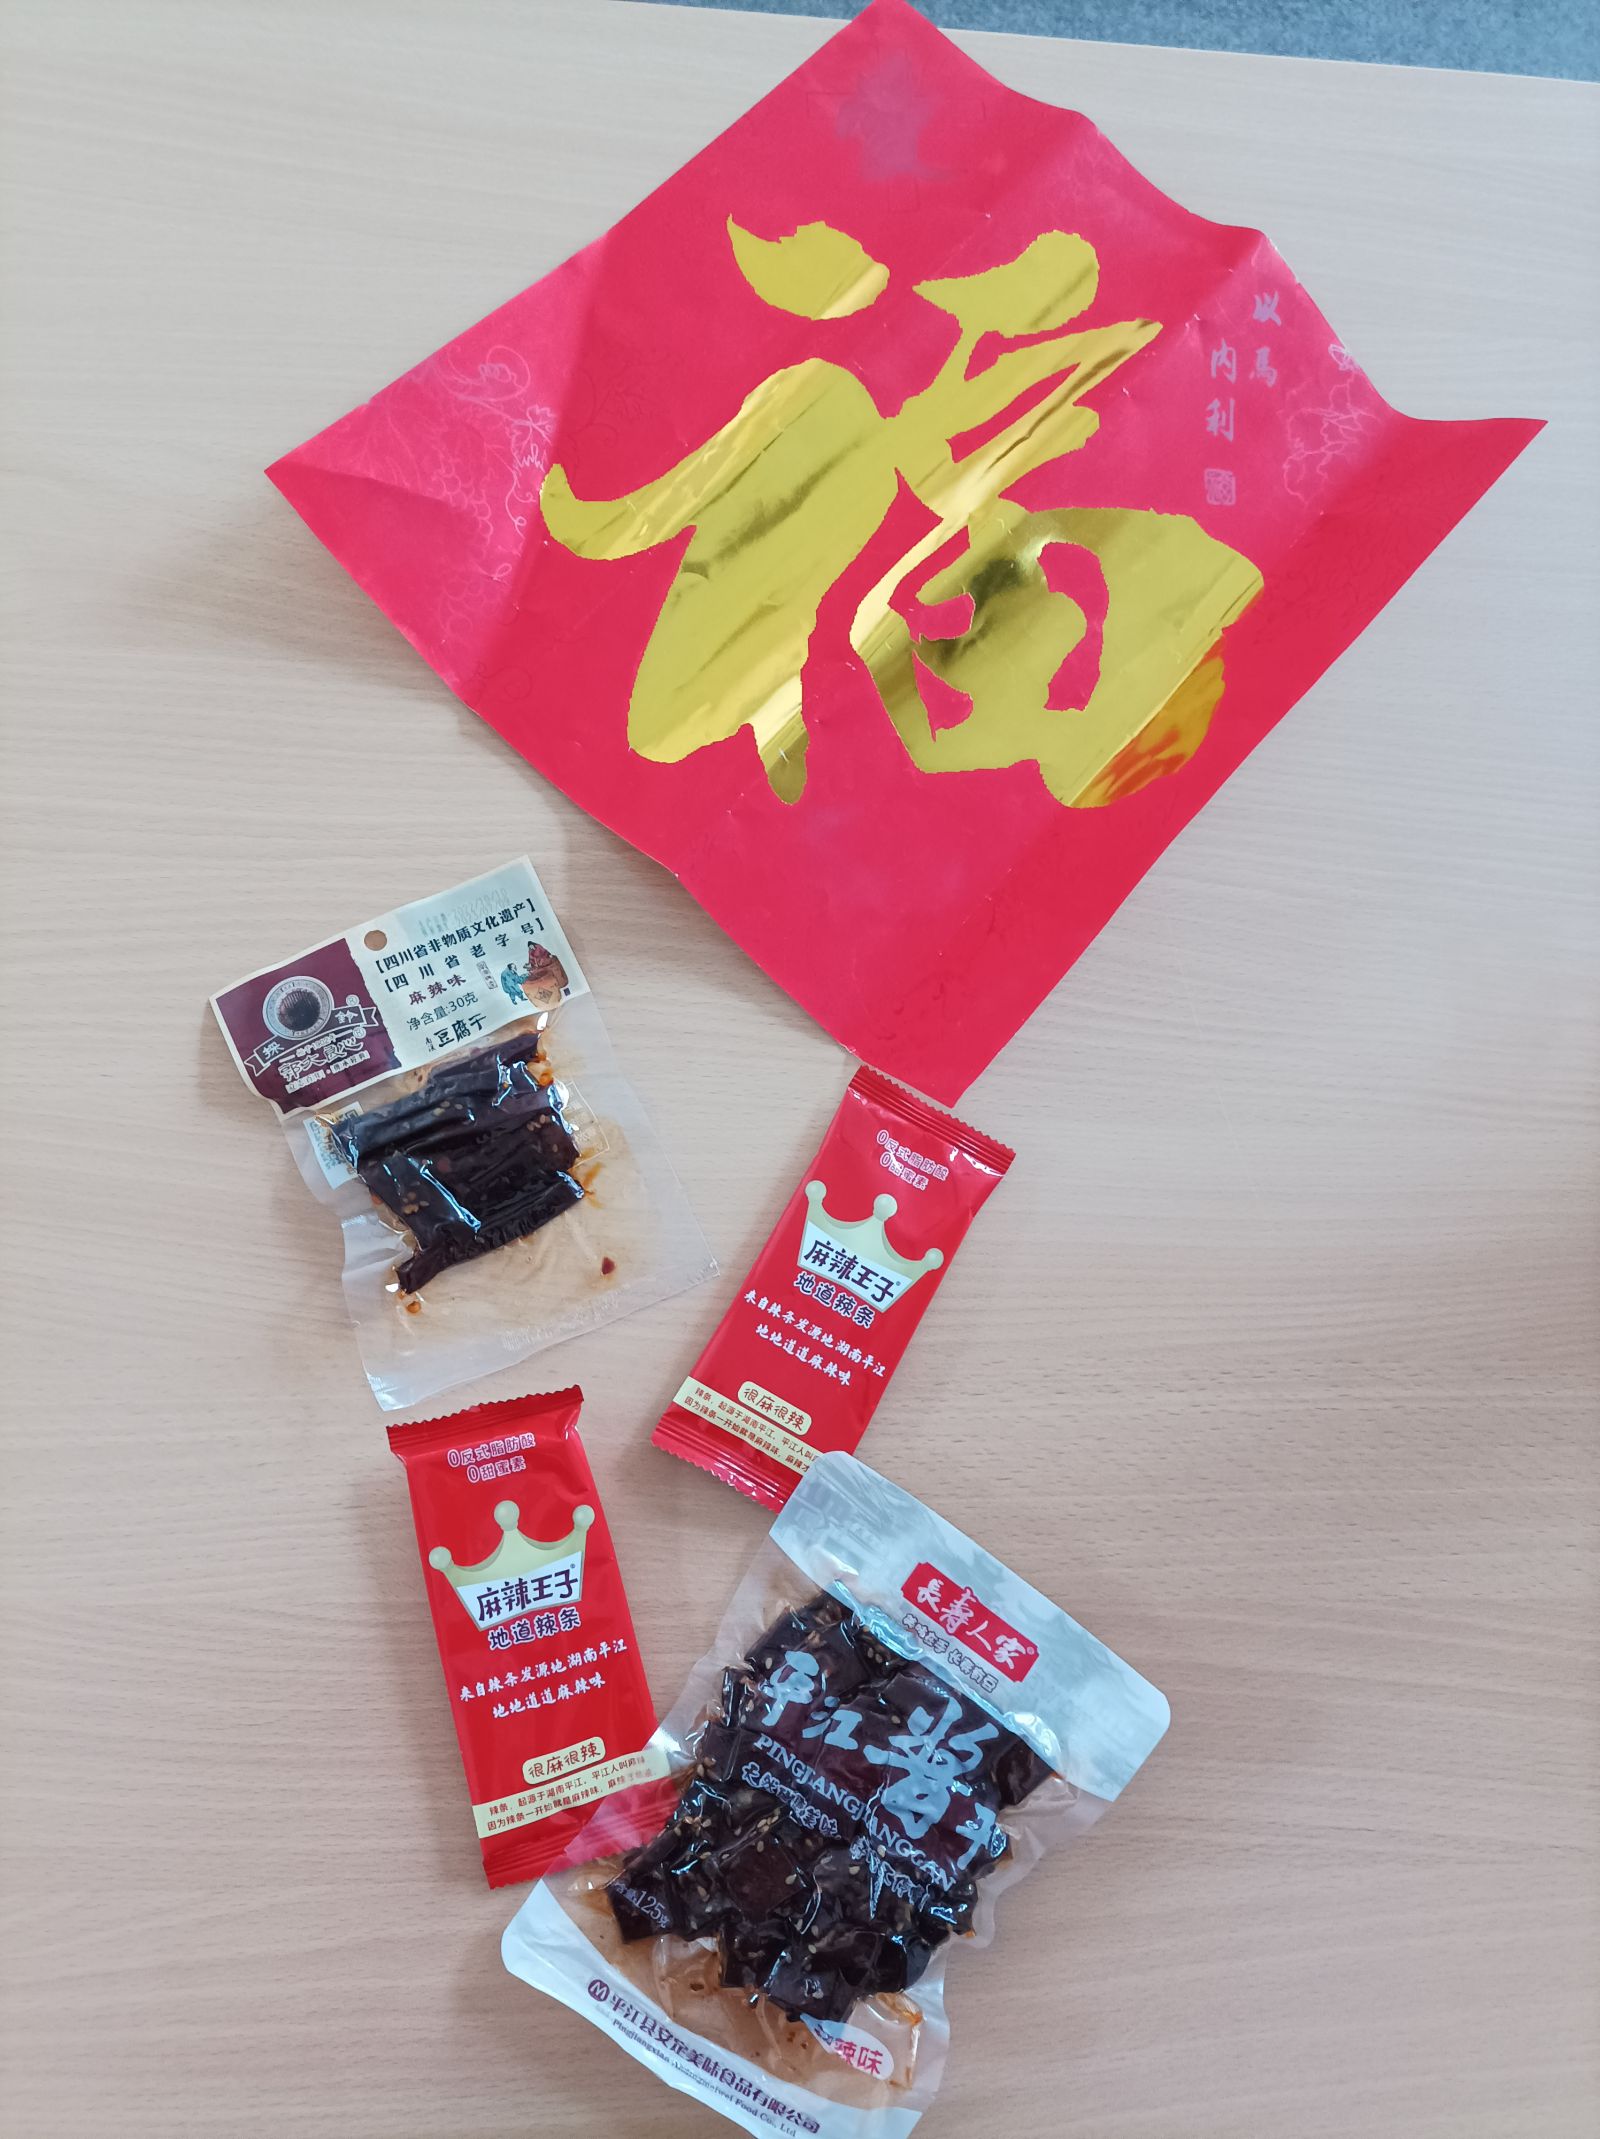 Przedmioty związane z obchodami chińskiego Nowego Roku - czerwona koperta, przysmaki w kolorowych saszetkach.